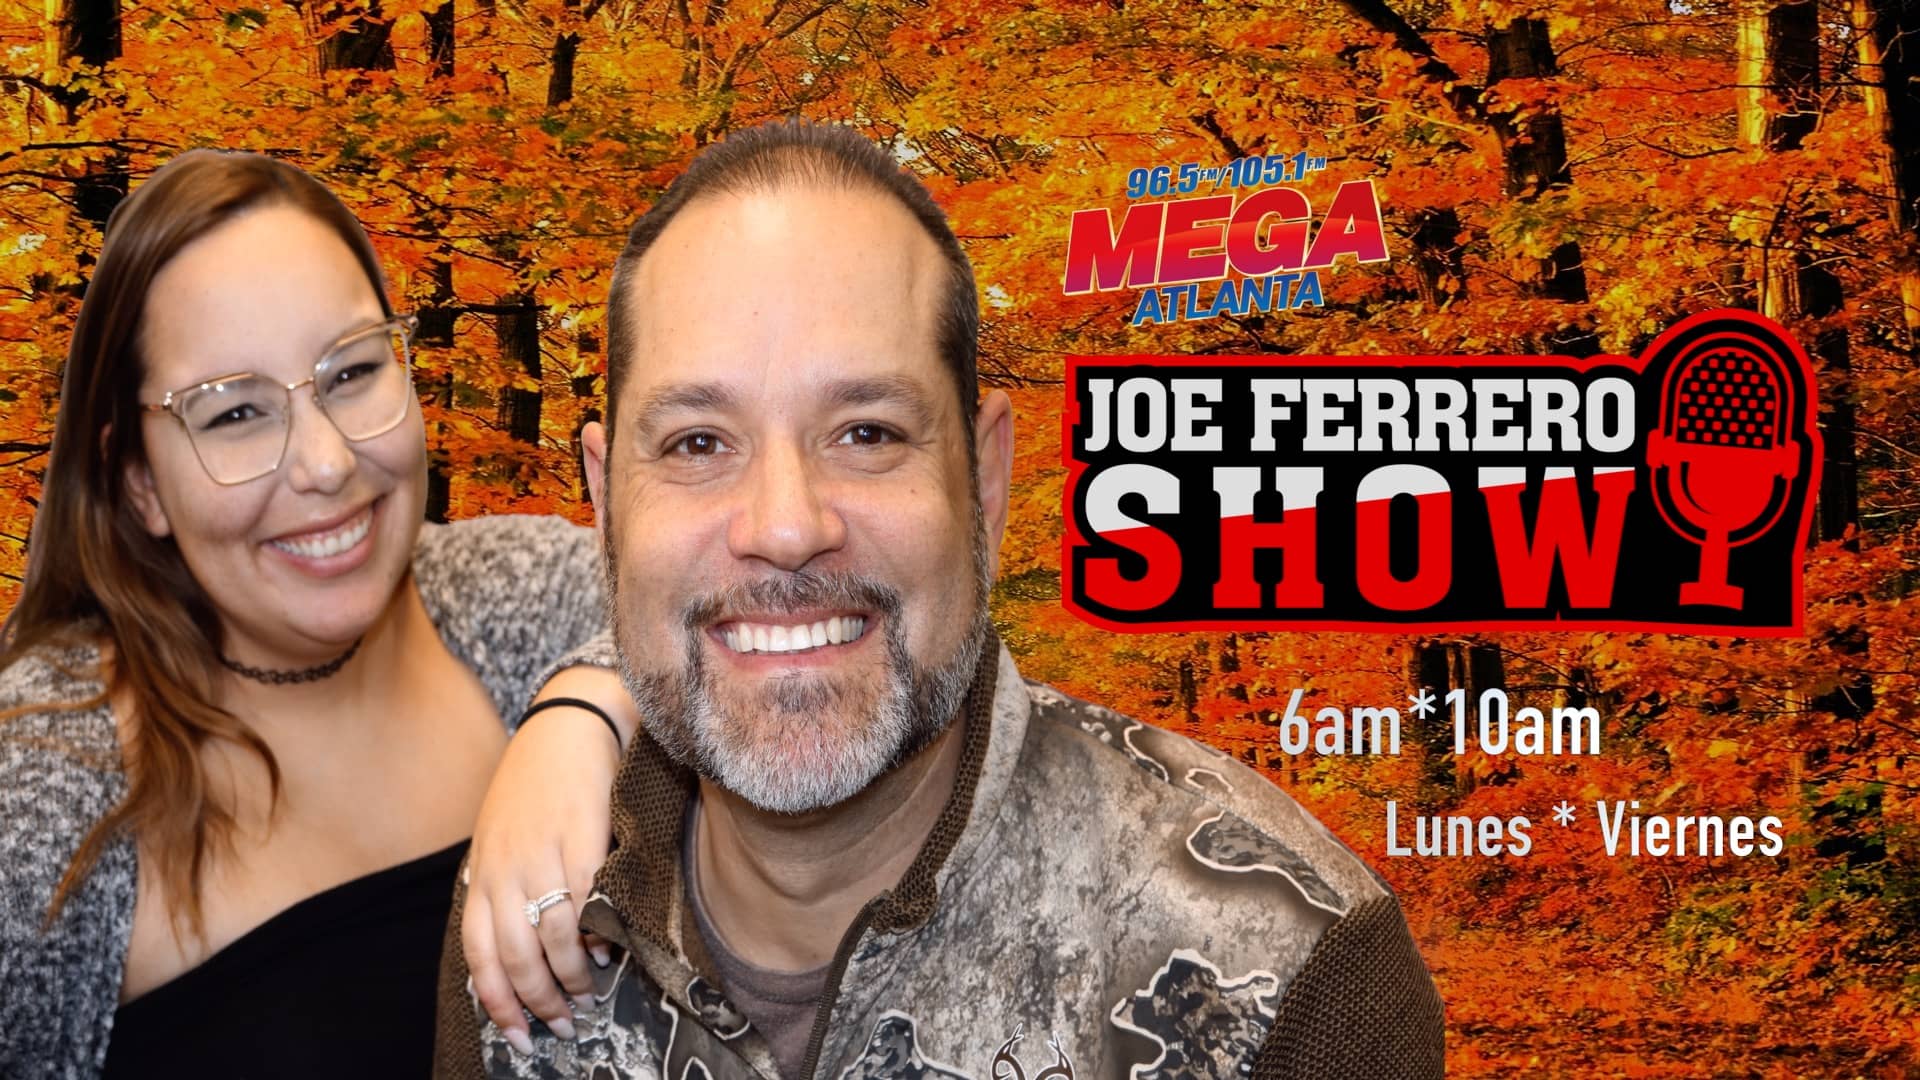 Joe Ferrero Show